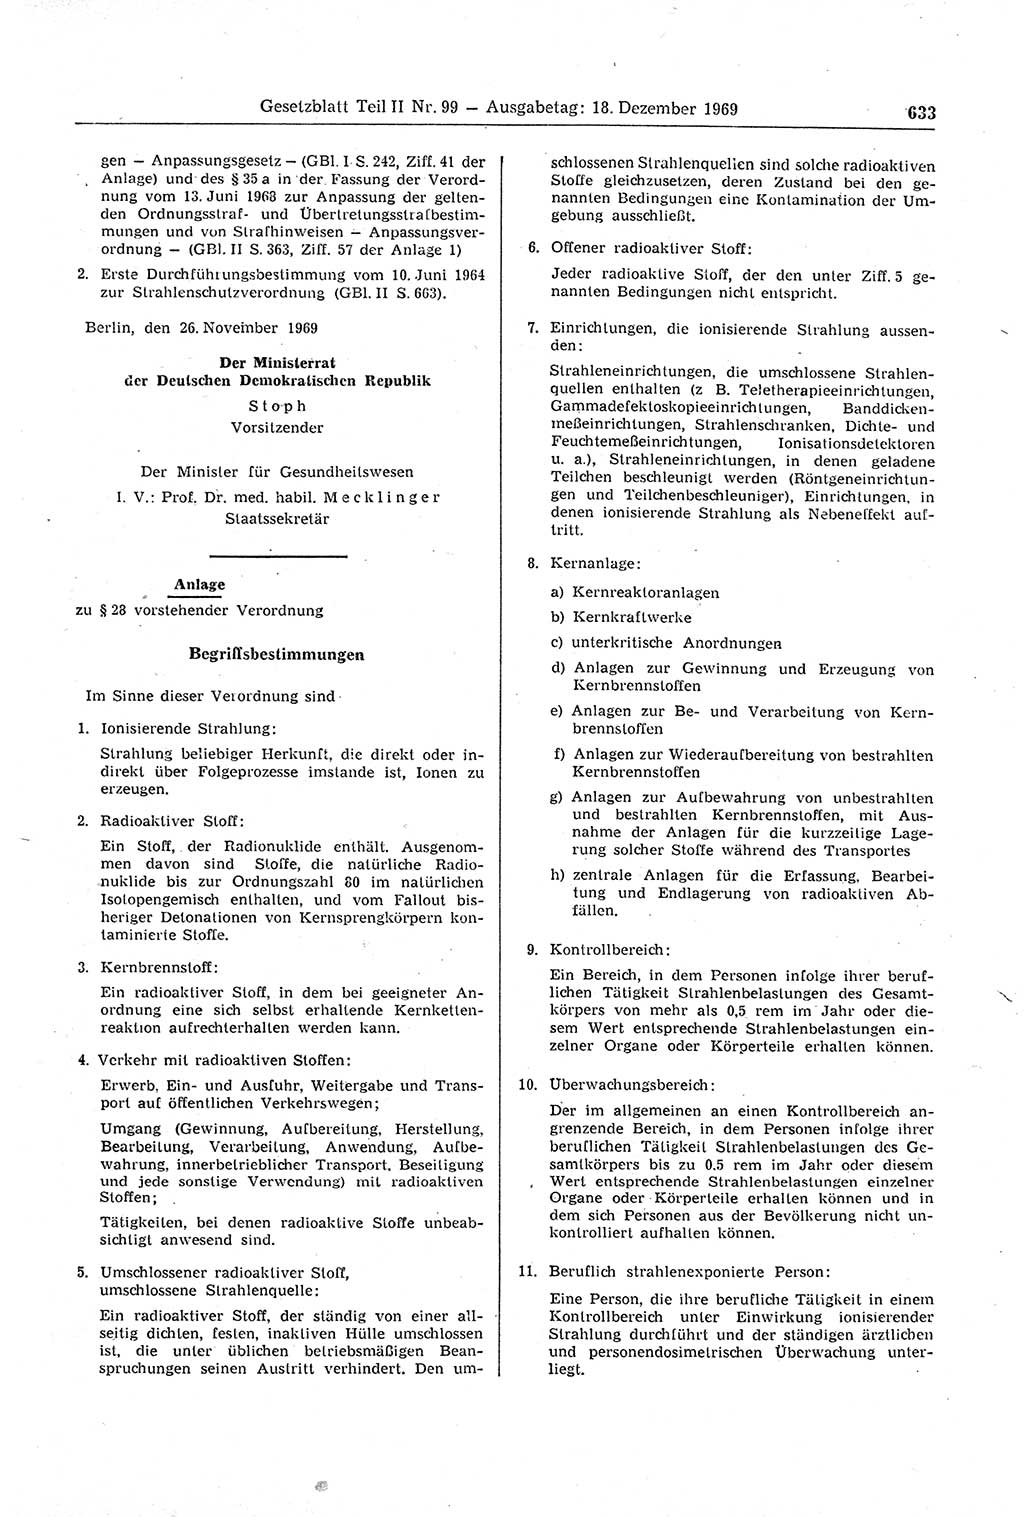 Gesetzblatt (GBl.) der Deutschen Demokratischen Republik (DDR) Teil ⅠⅠ 1969, Seite 633 (GBl. DDR ⅠⅠ 1969, S. 633)